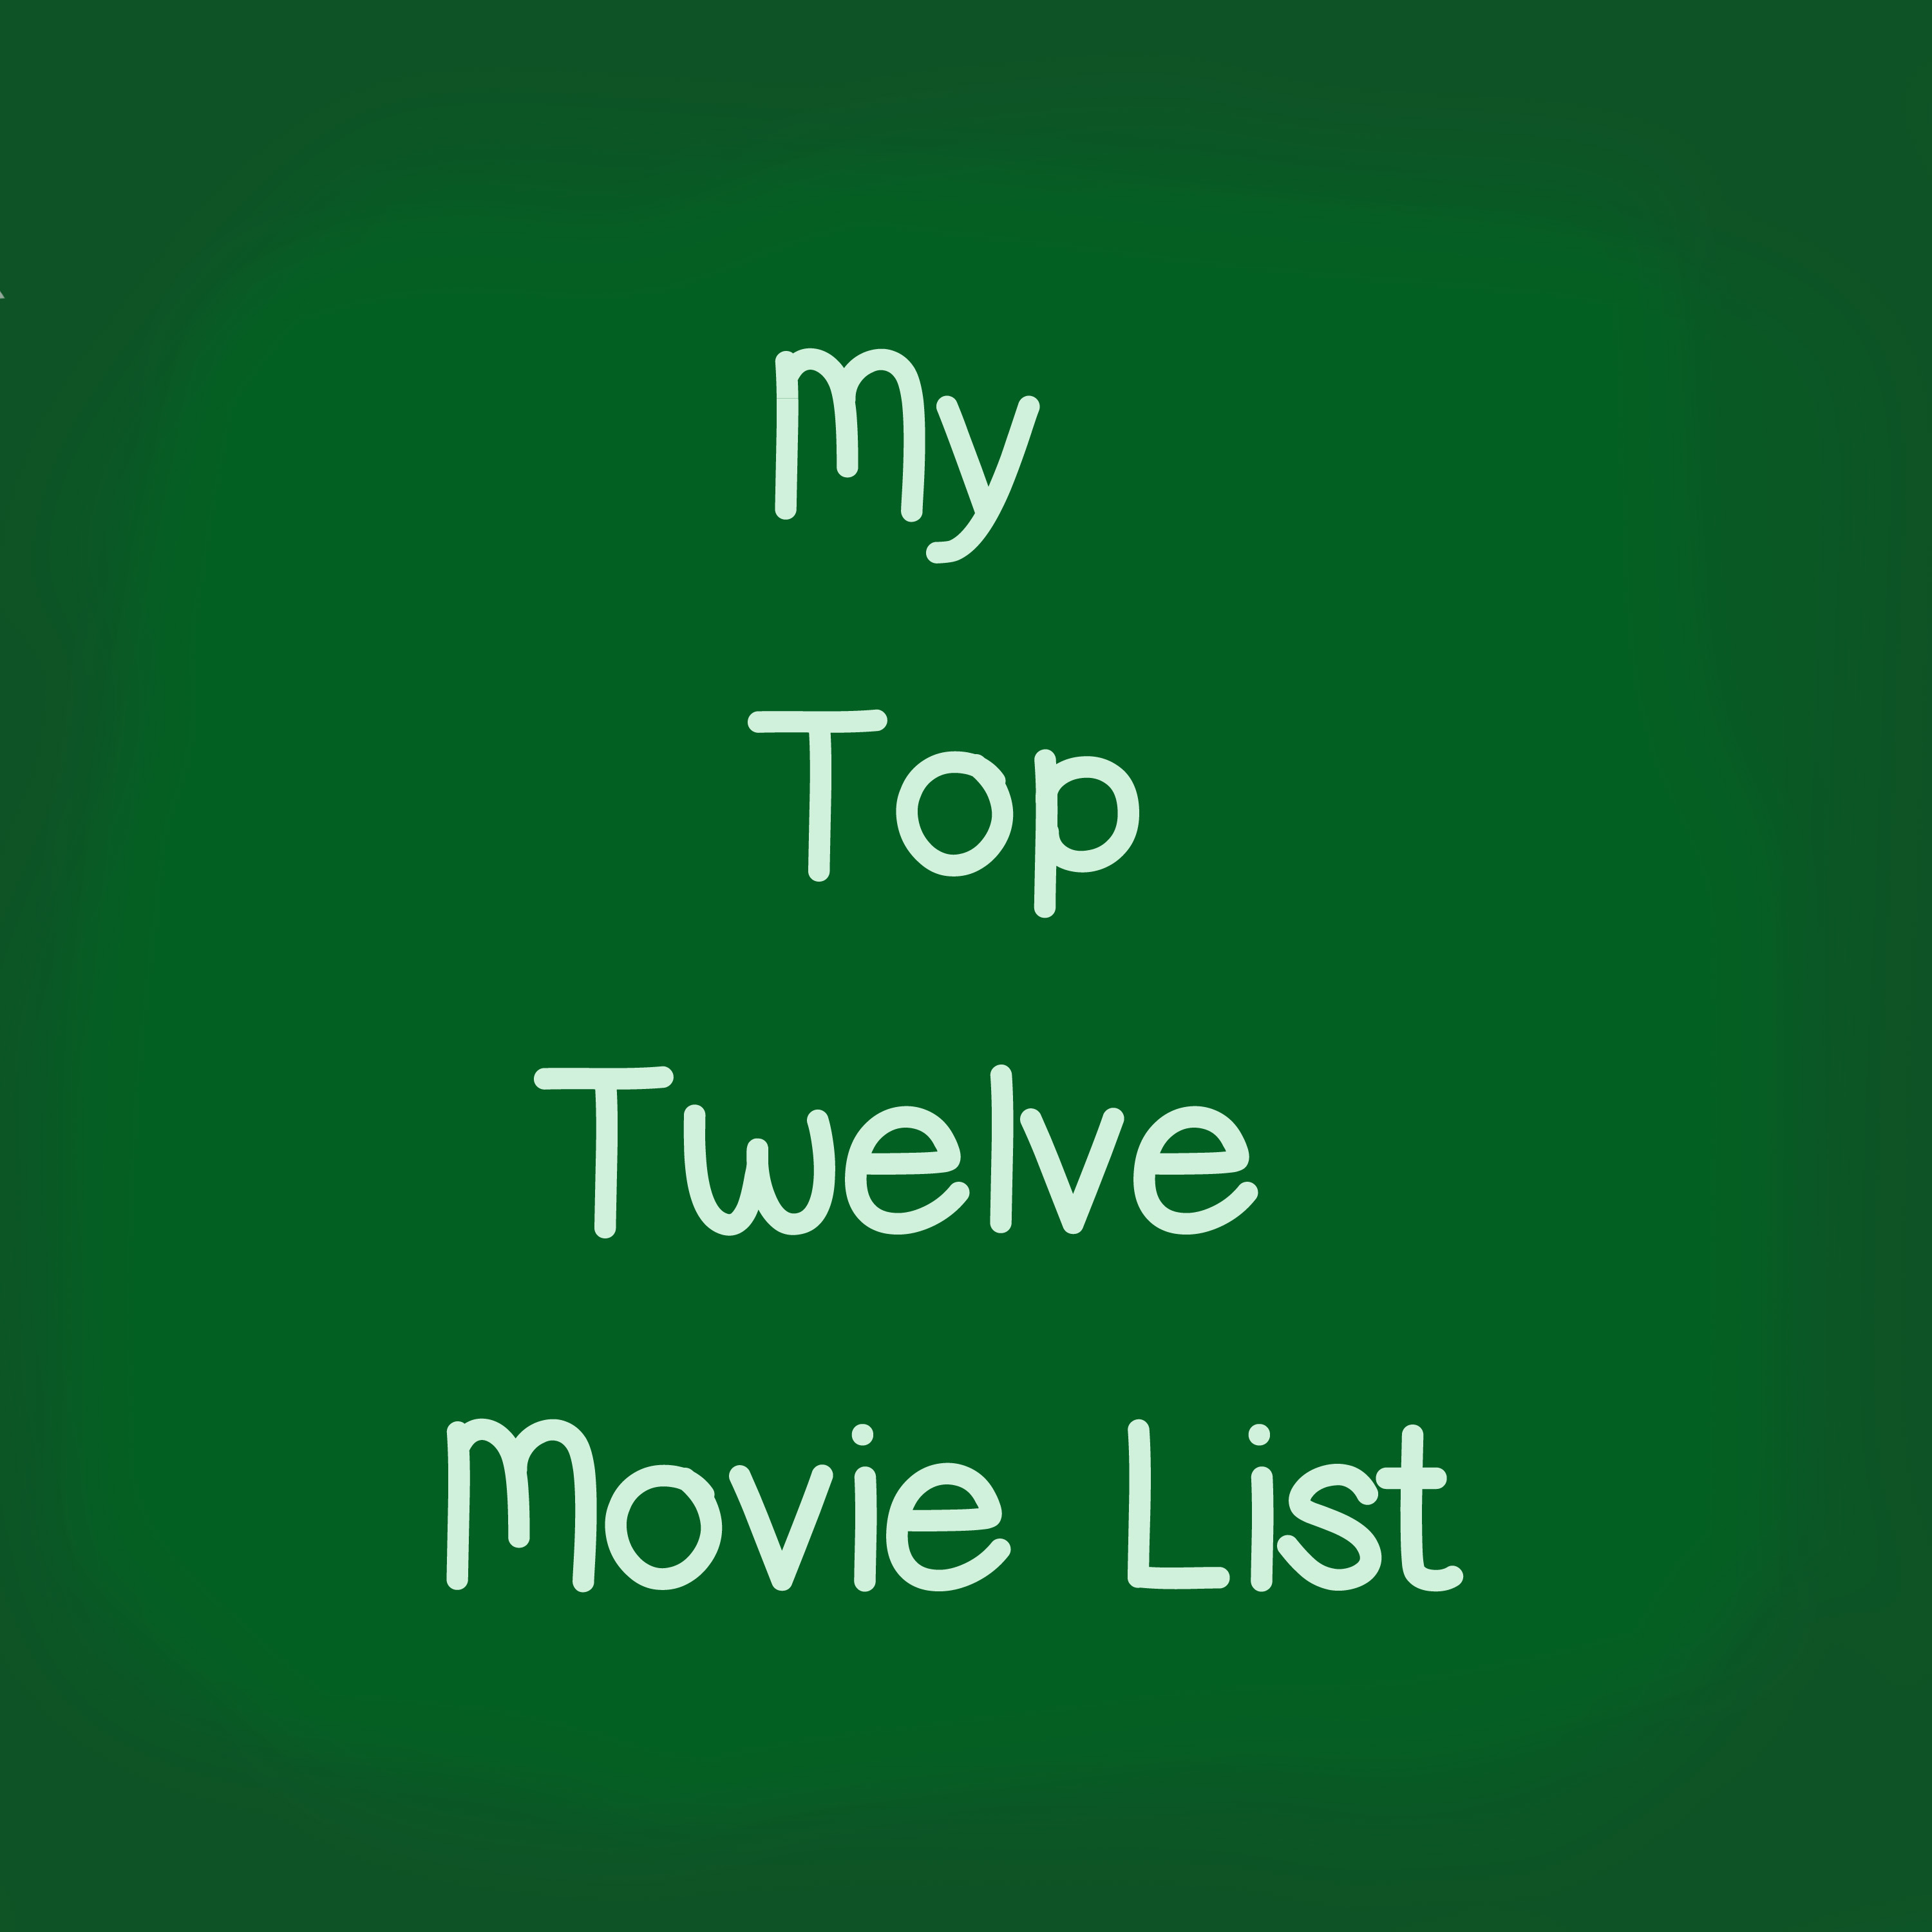 My Top Twelve Movie List